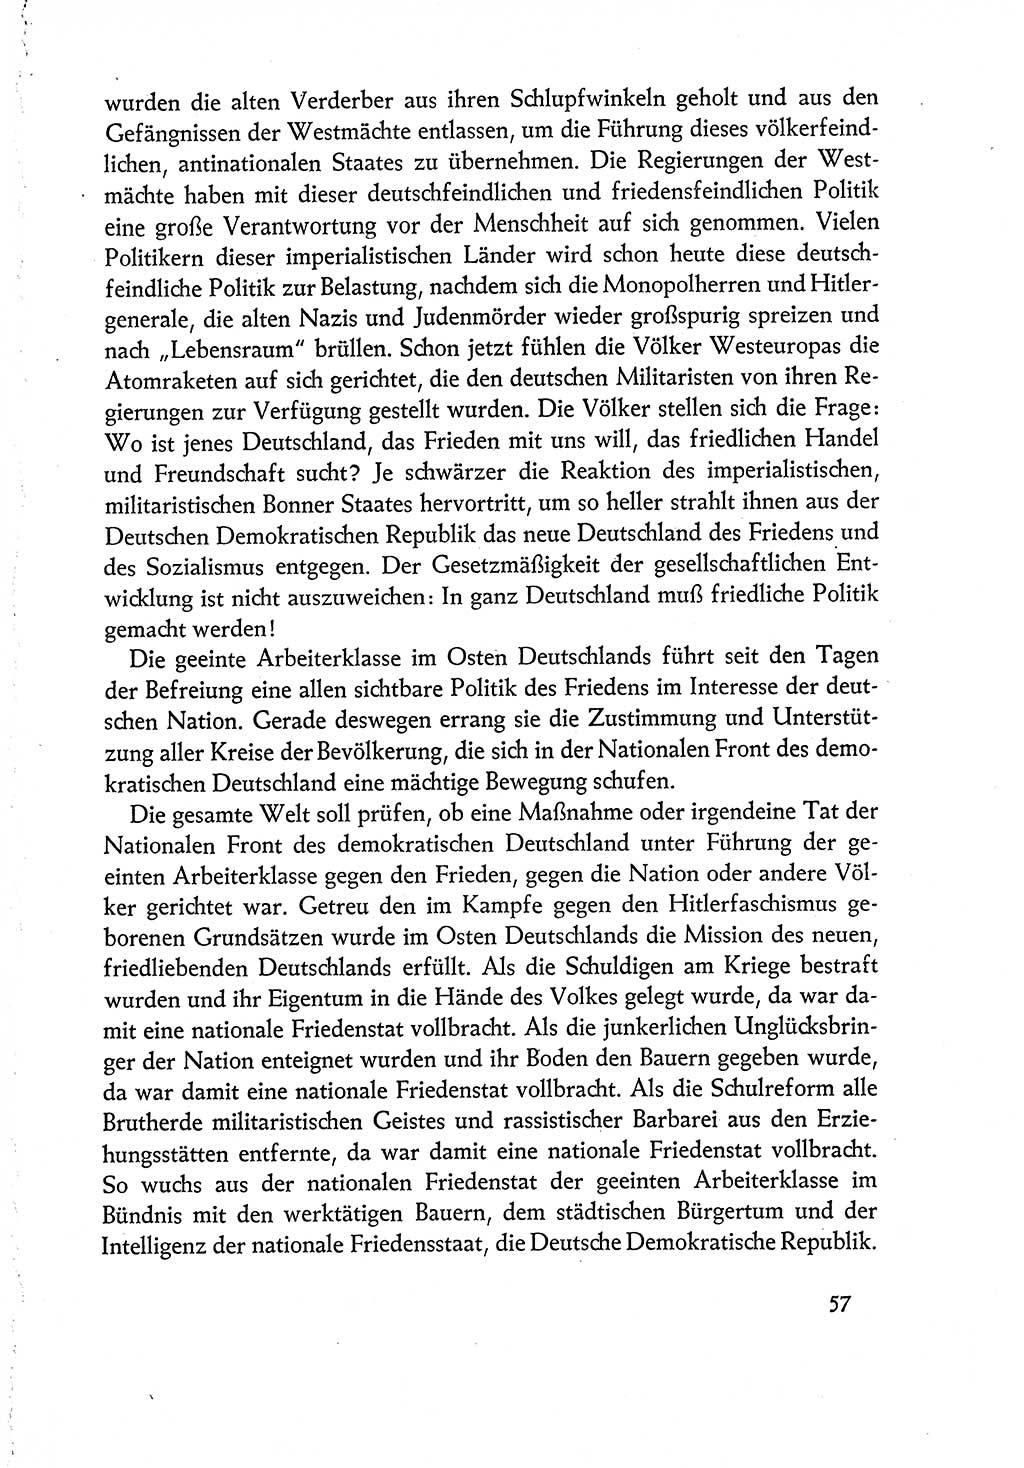 Dokumente der Sozialistischen Einheitspartei Deutschlands (SED) [Deutsche Demokratische Republik (DDR)] 1960-1961, Seite 57 (Dok. SED DDR 1960-1961, S. 57)